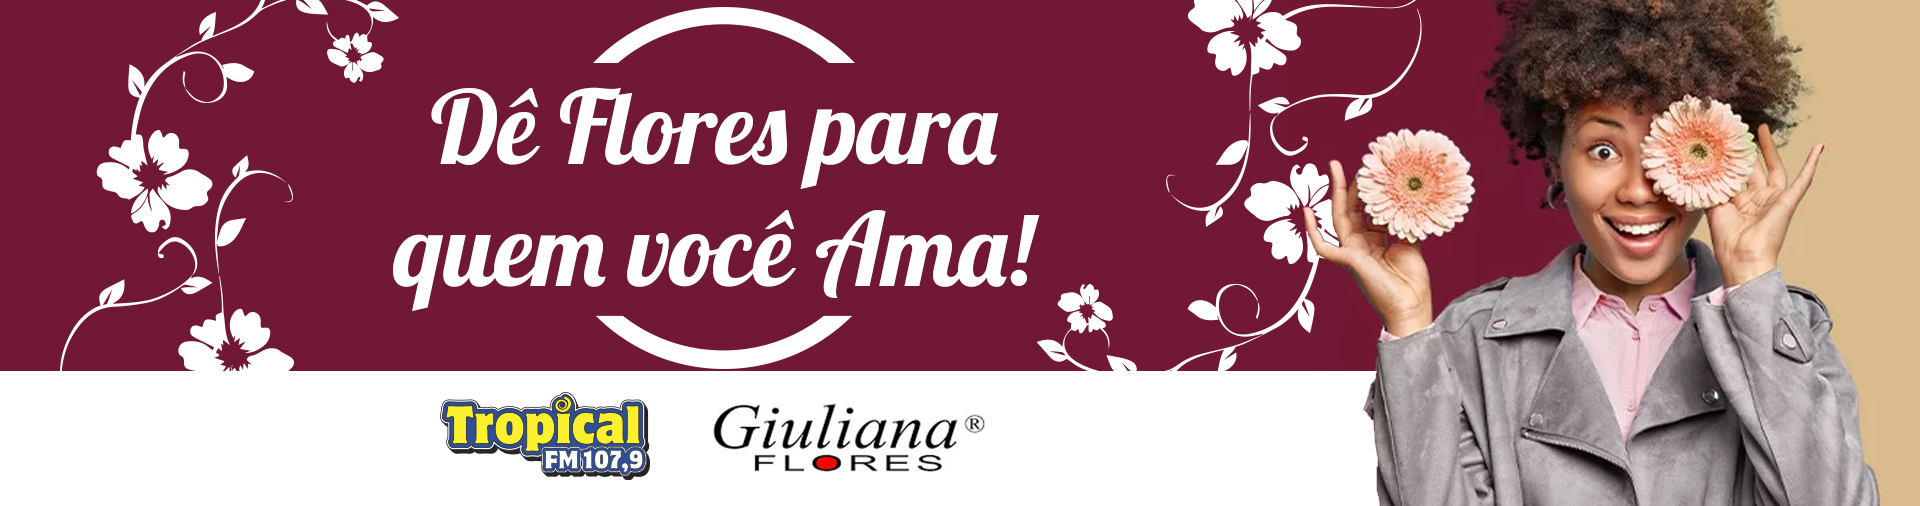 Banner Entrega de Flores da Tropical e da Giuliana Flores